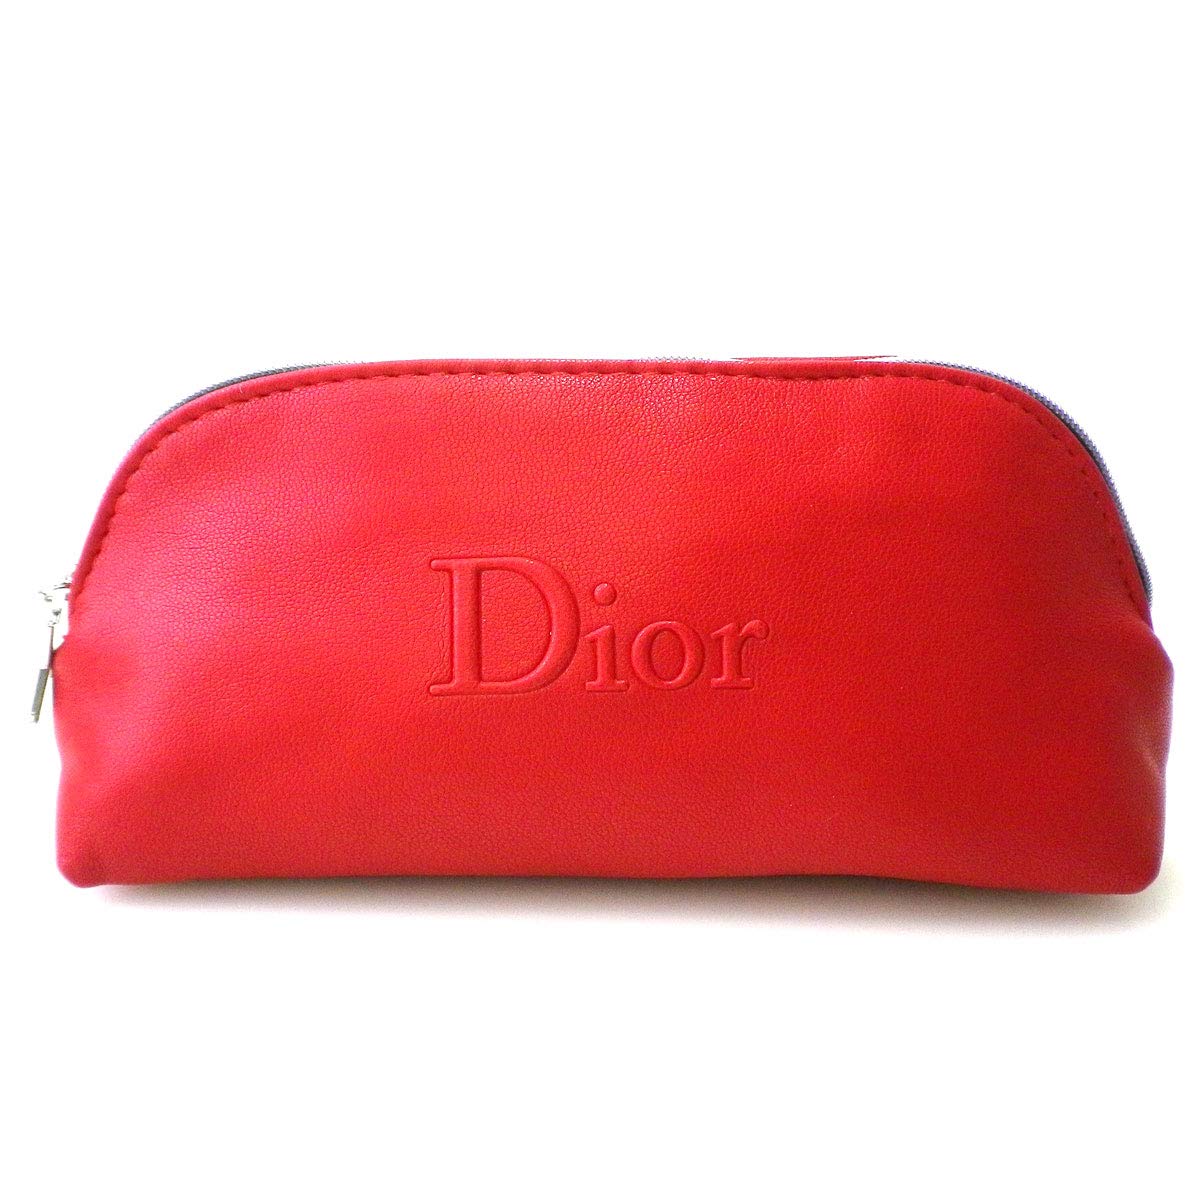 Dior makeup pouch  dior diormakeup diorbeauty diorlipoil diorli  dior  makeup bag  TikTok